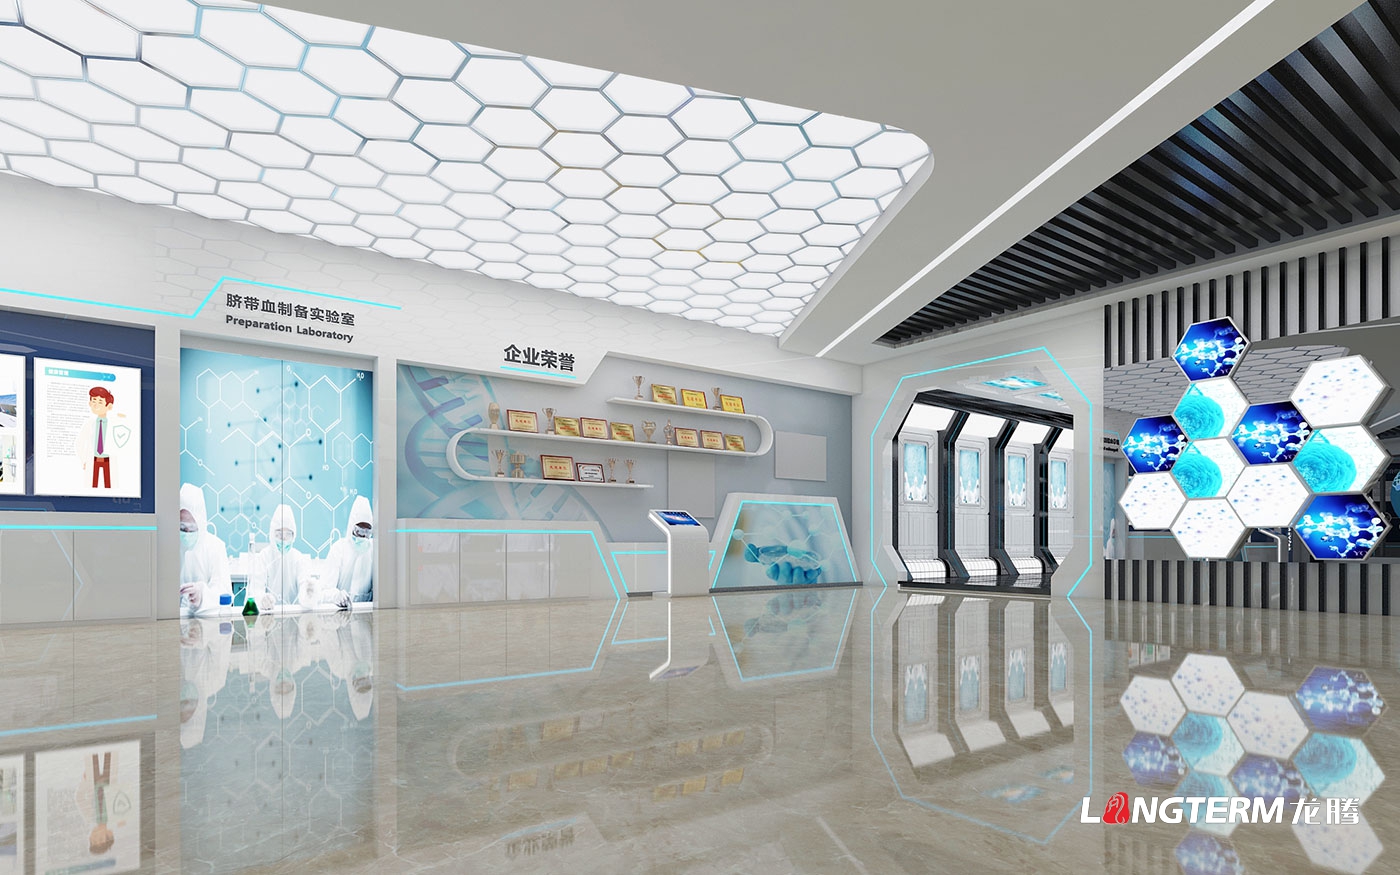 成都市科普教育基地(新生命干細胞)大廳升級改造設計效果圖——科技化、數字化、互動化展覽展示